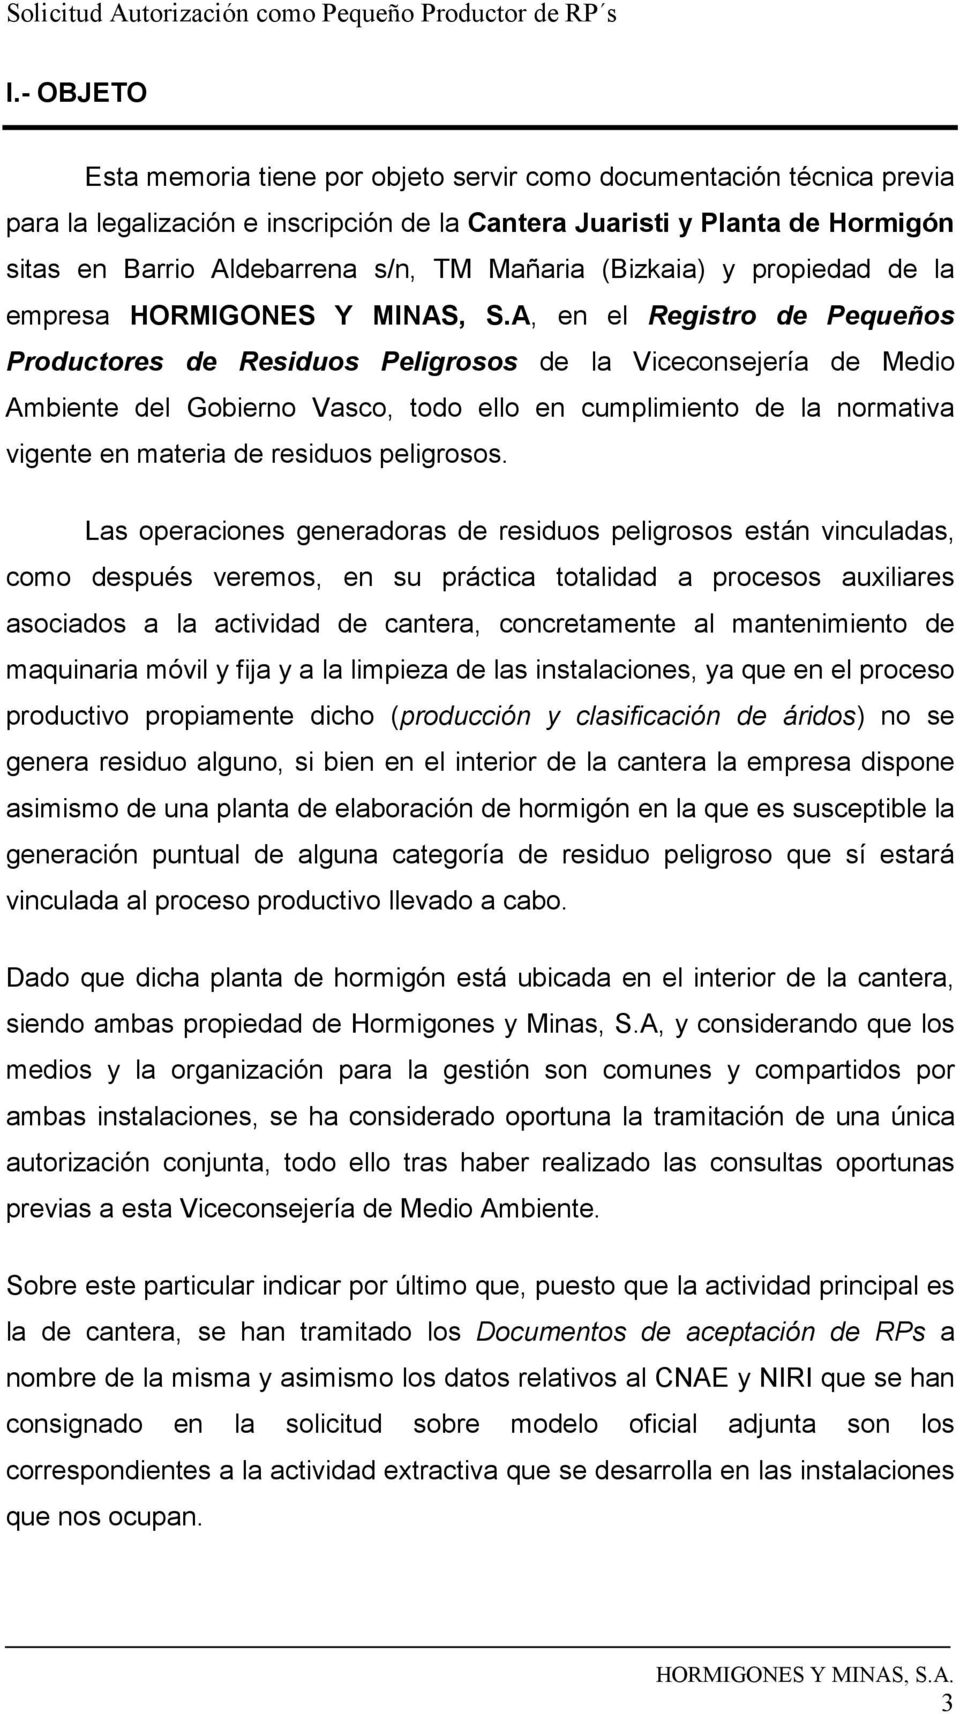 A, en el Registro de Pequeños Productores de Residuos Peligrosos de la Viceconsejería de Medio Ambiente del Gobierno Vasco, todo ello en cumplimiento de la normativa vigente en materia de residuos